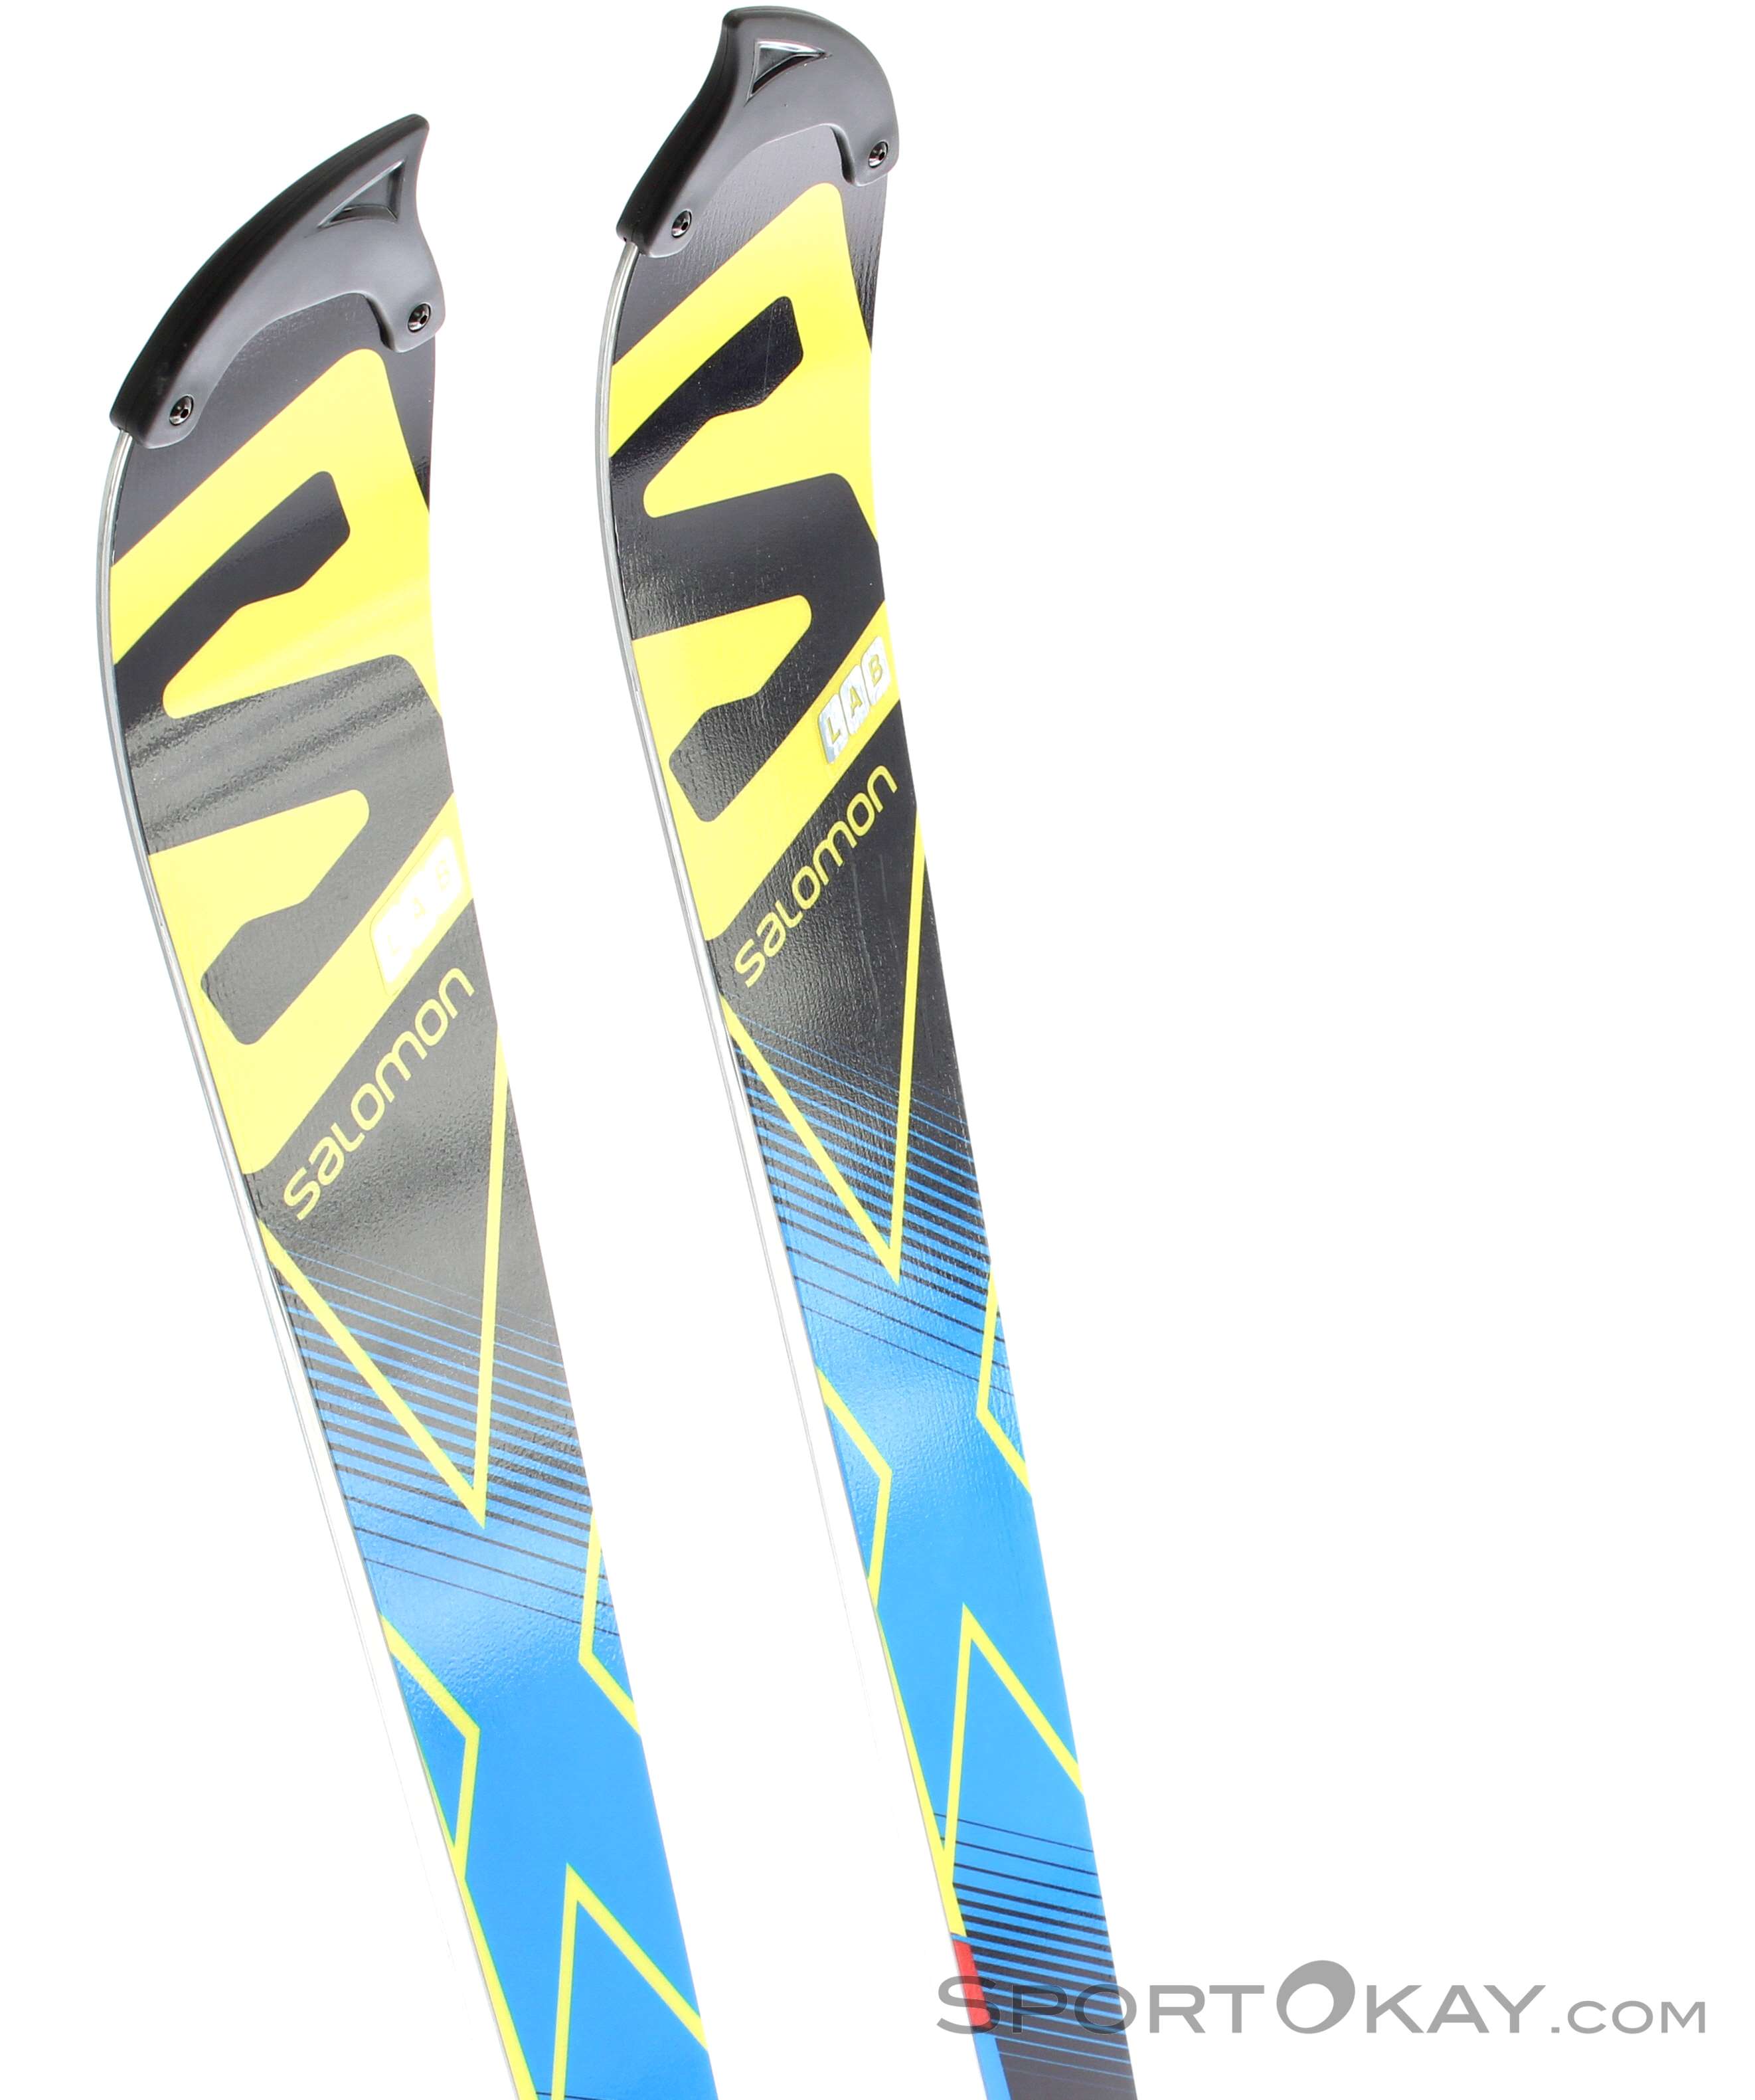 Salomon X-Race SL + X 12 Skiset Alpine Skis - Skis - Ski & Freeride All